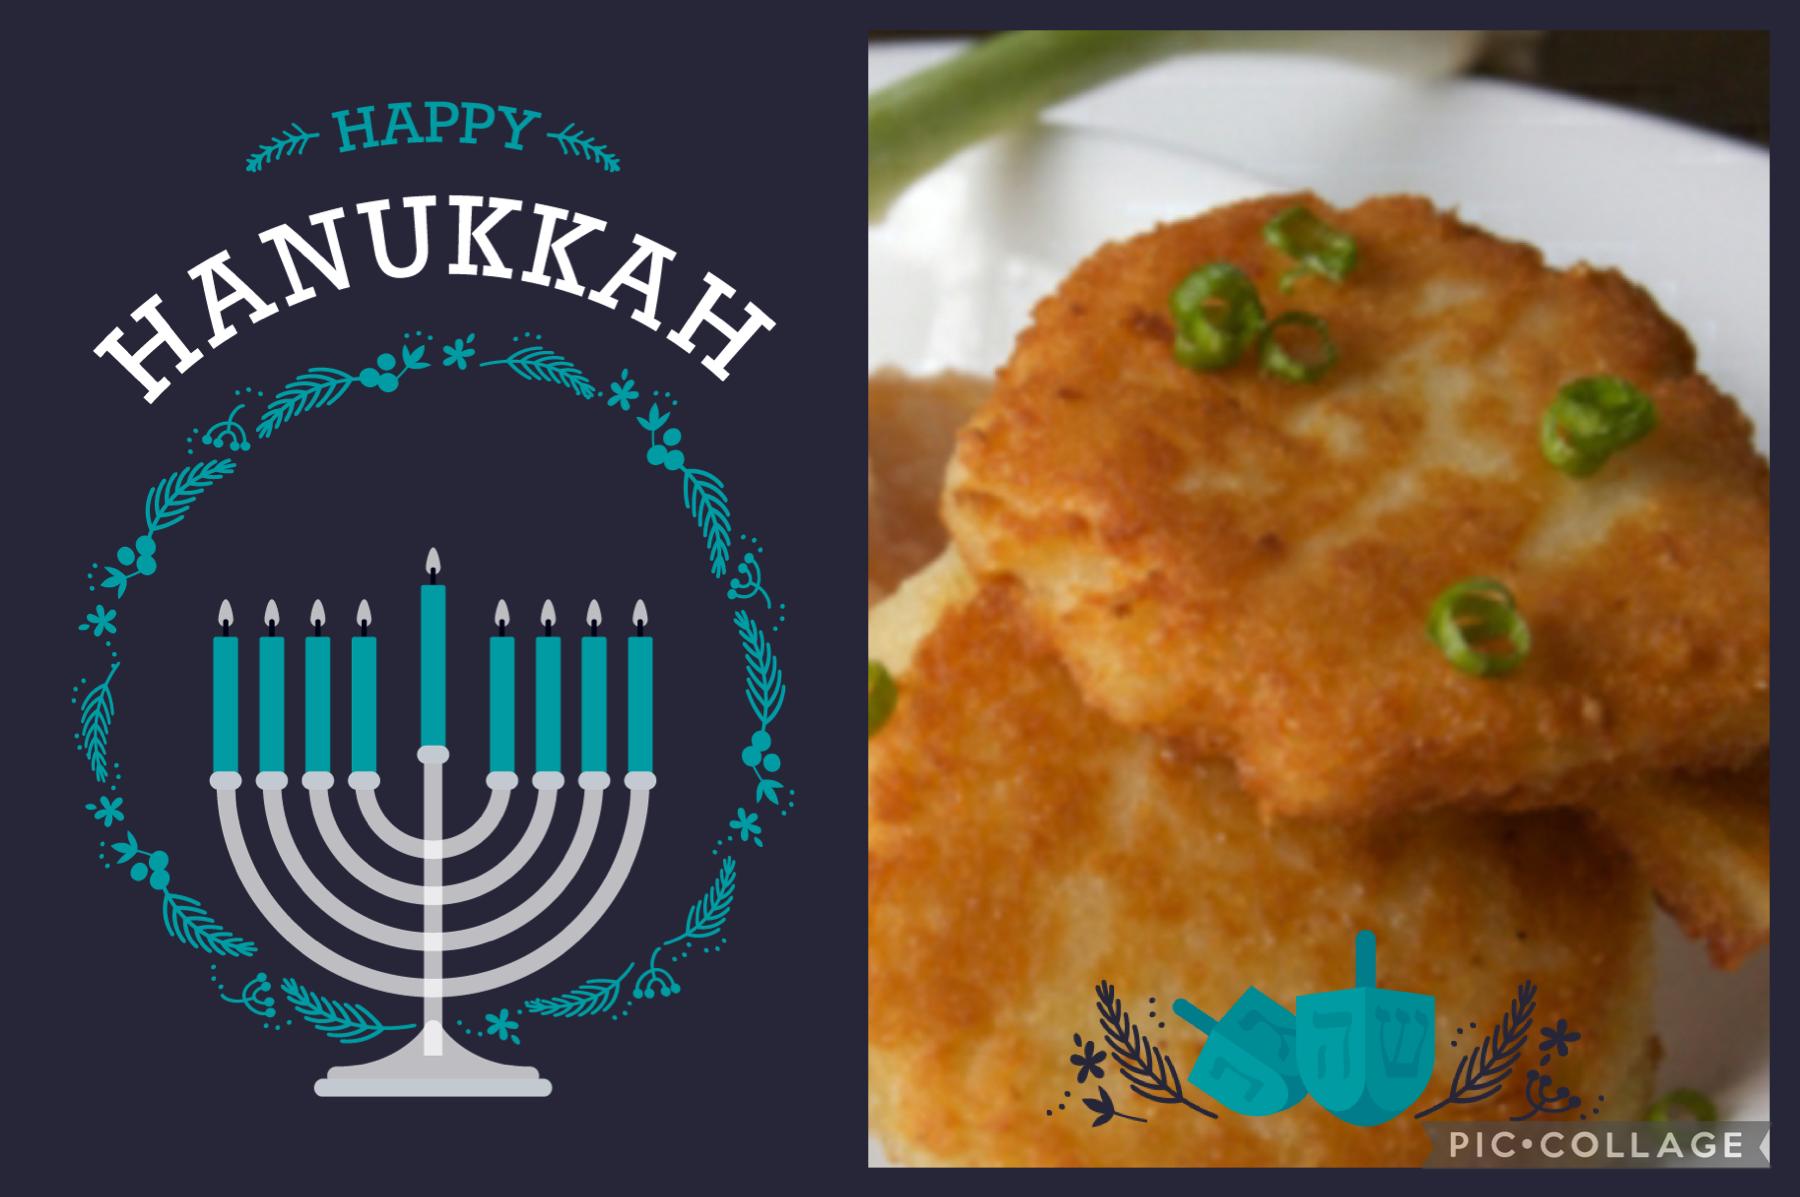 Happy Hanukkah everyone!
( Couldn’t help but put my favorite Hanukkah food lol)